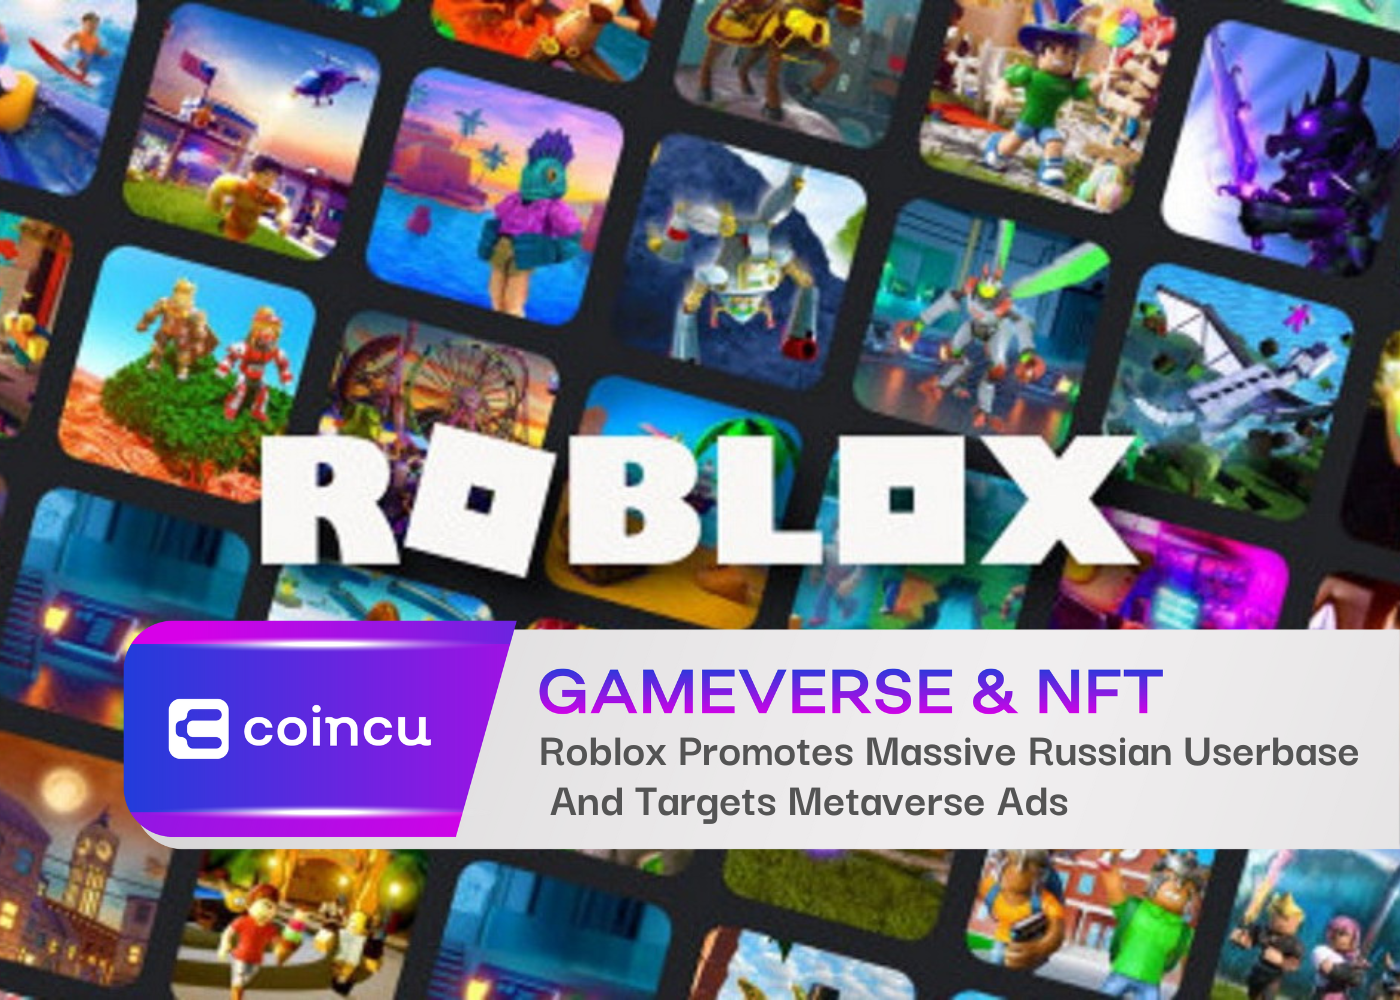 Roblox Promotes Massive Russian Userbase